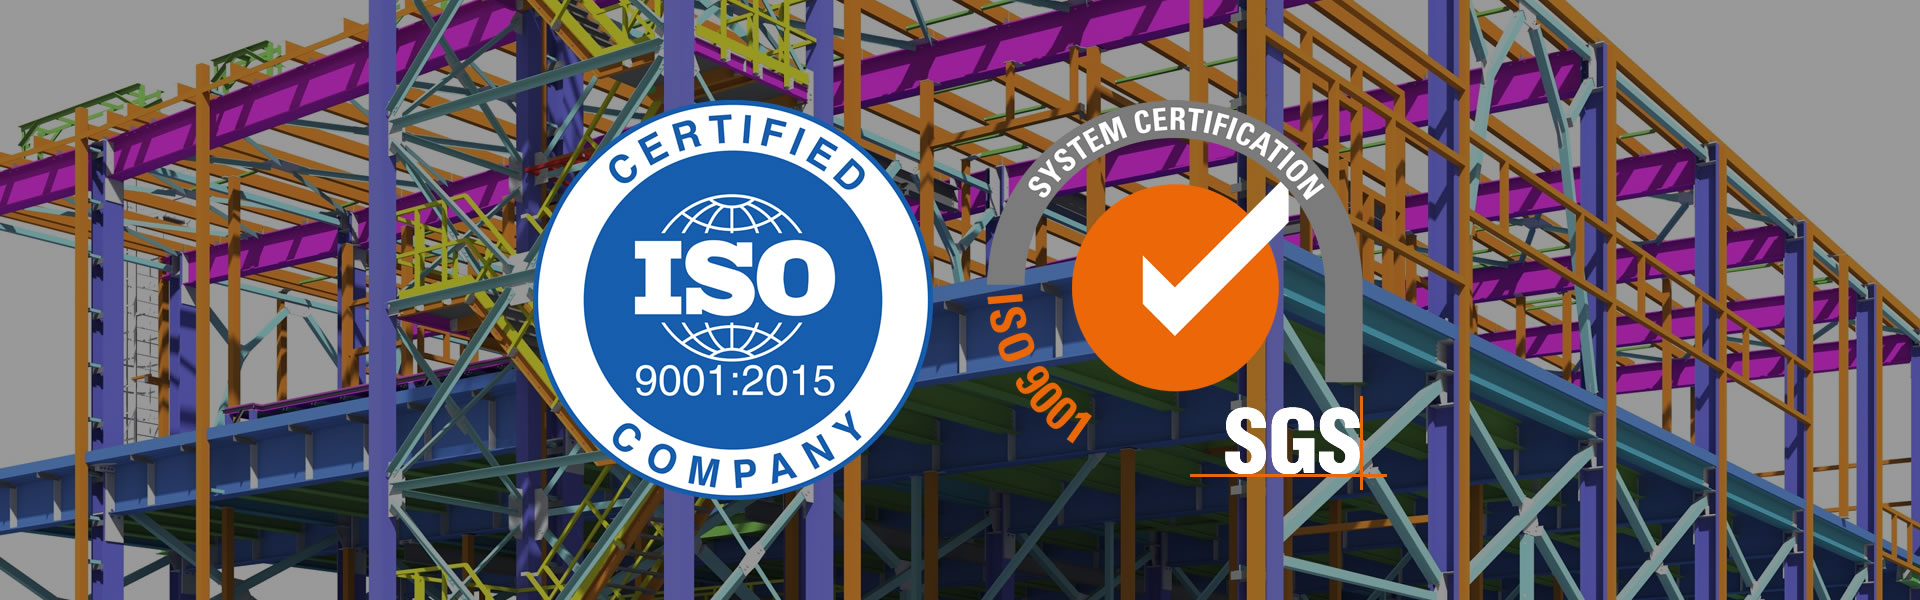 MIC SAS. ha sido evaluada y certificada en cuanto al cumplimiento de los requisitos de la ISO 9001:2015